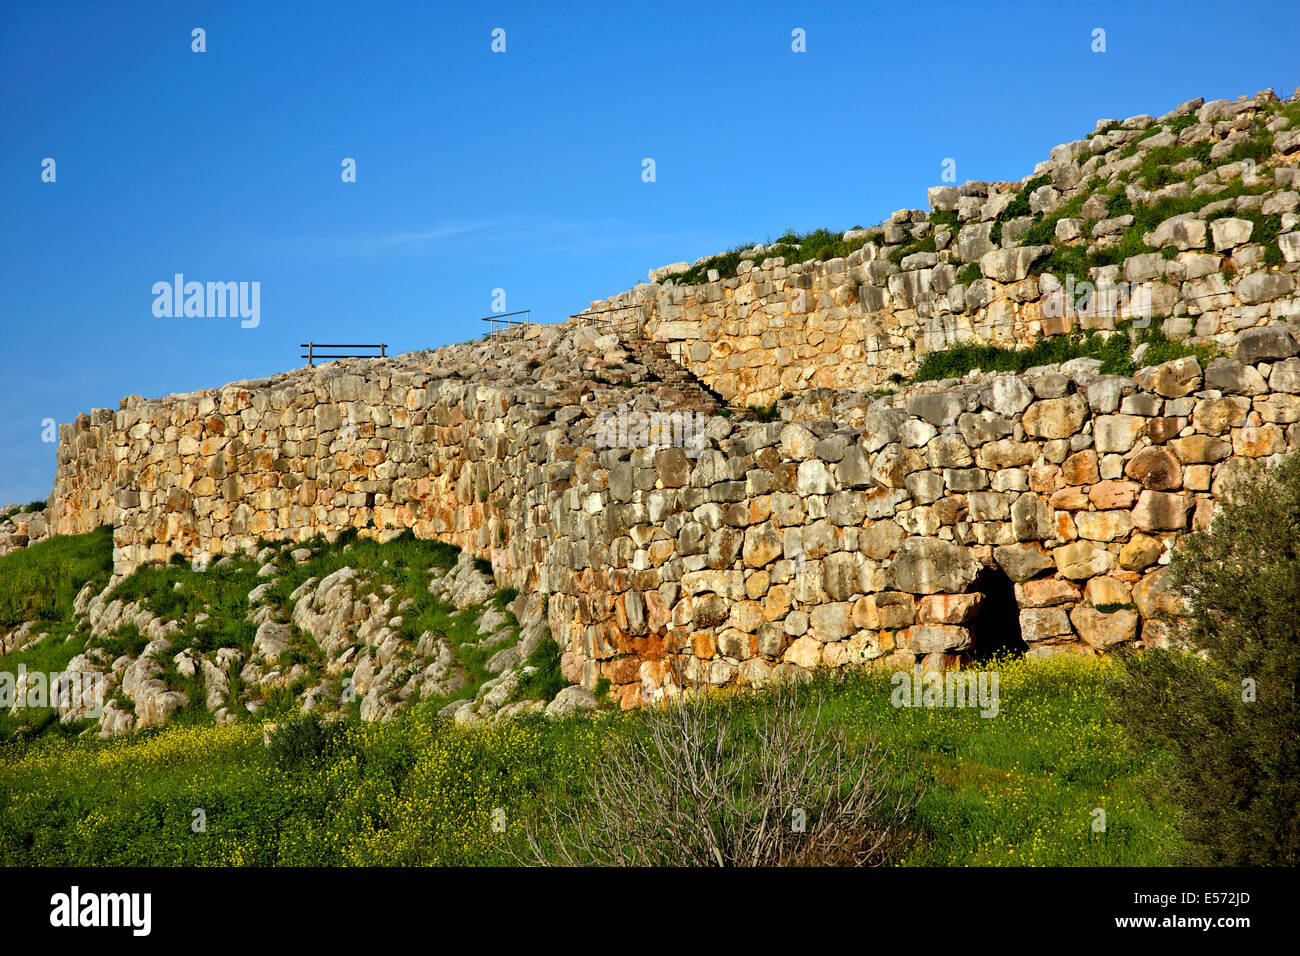 Les murs cyclopéens de l'acropole de l'ancienne cité de Tirynthe ('Tiryntha'), ('Argolide Argolide'), Péloponnèse, Grèce Banque D'Images